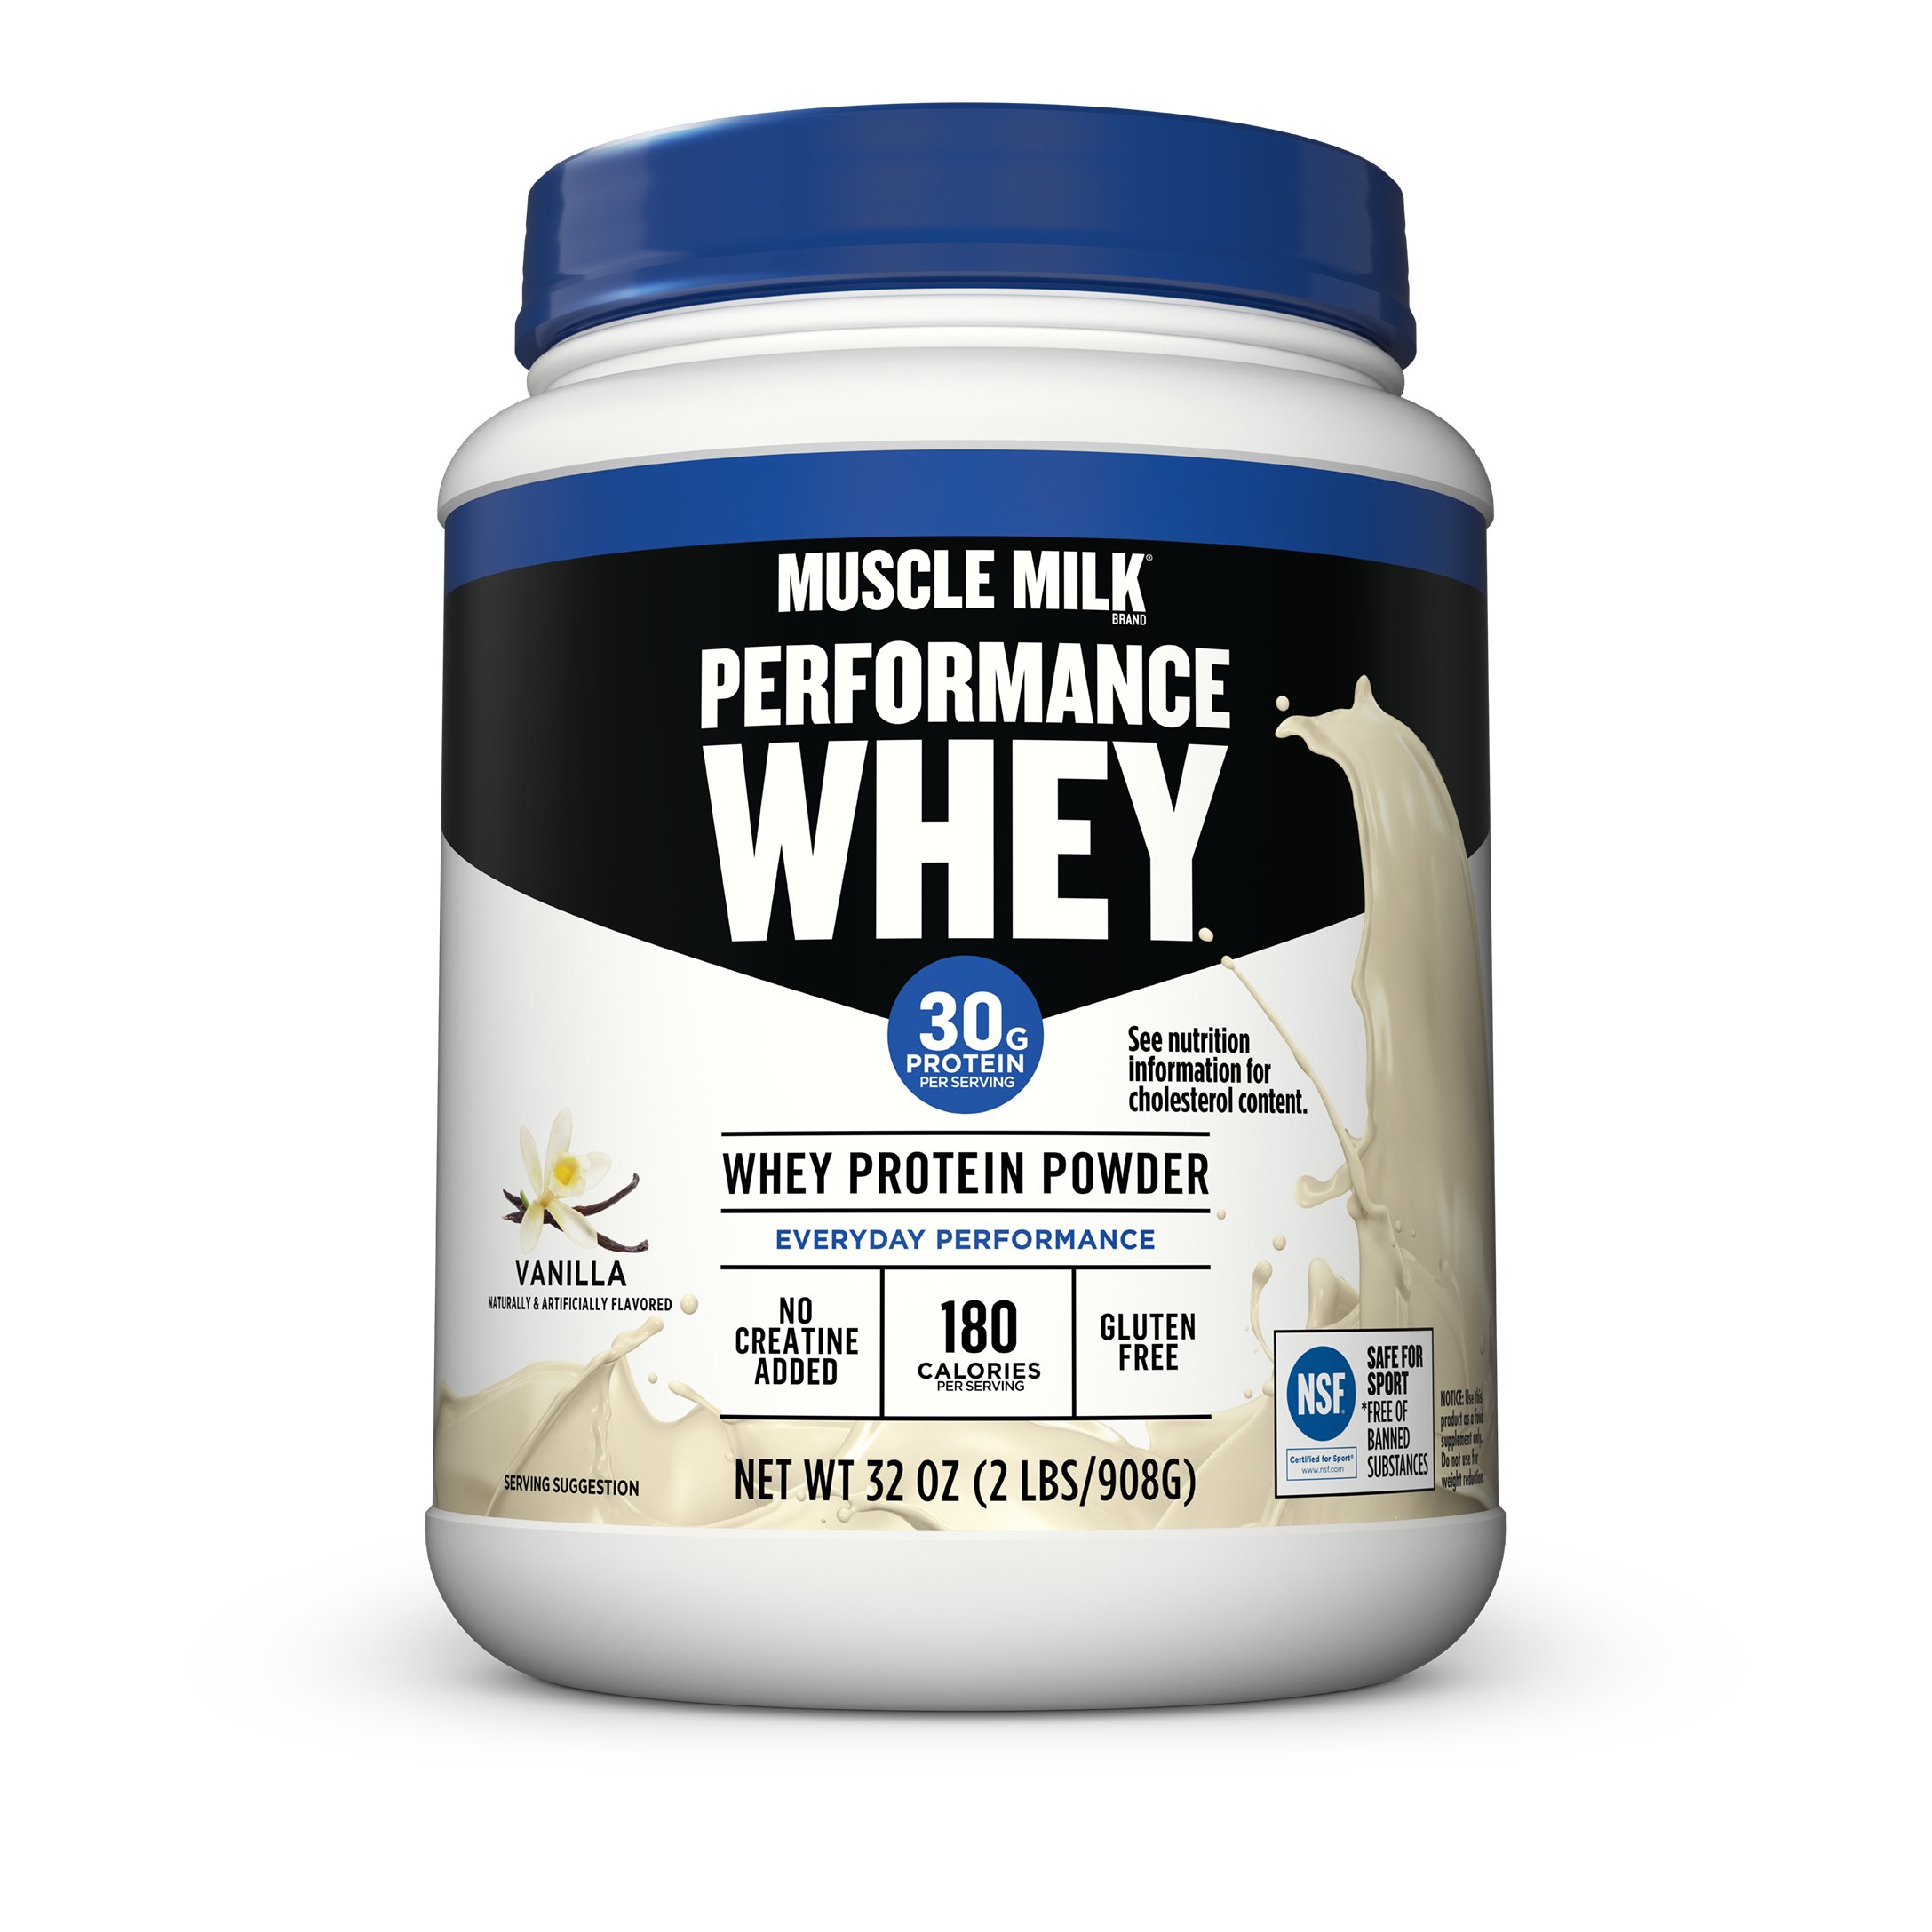 muscle-milk-performance-whey-protein-powder-vanilla-shop-diet